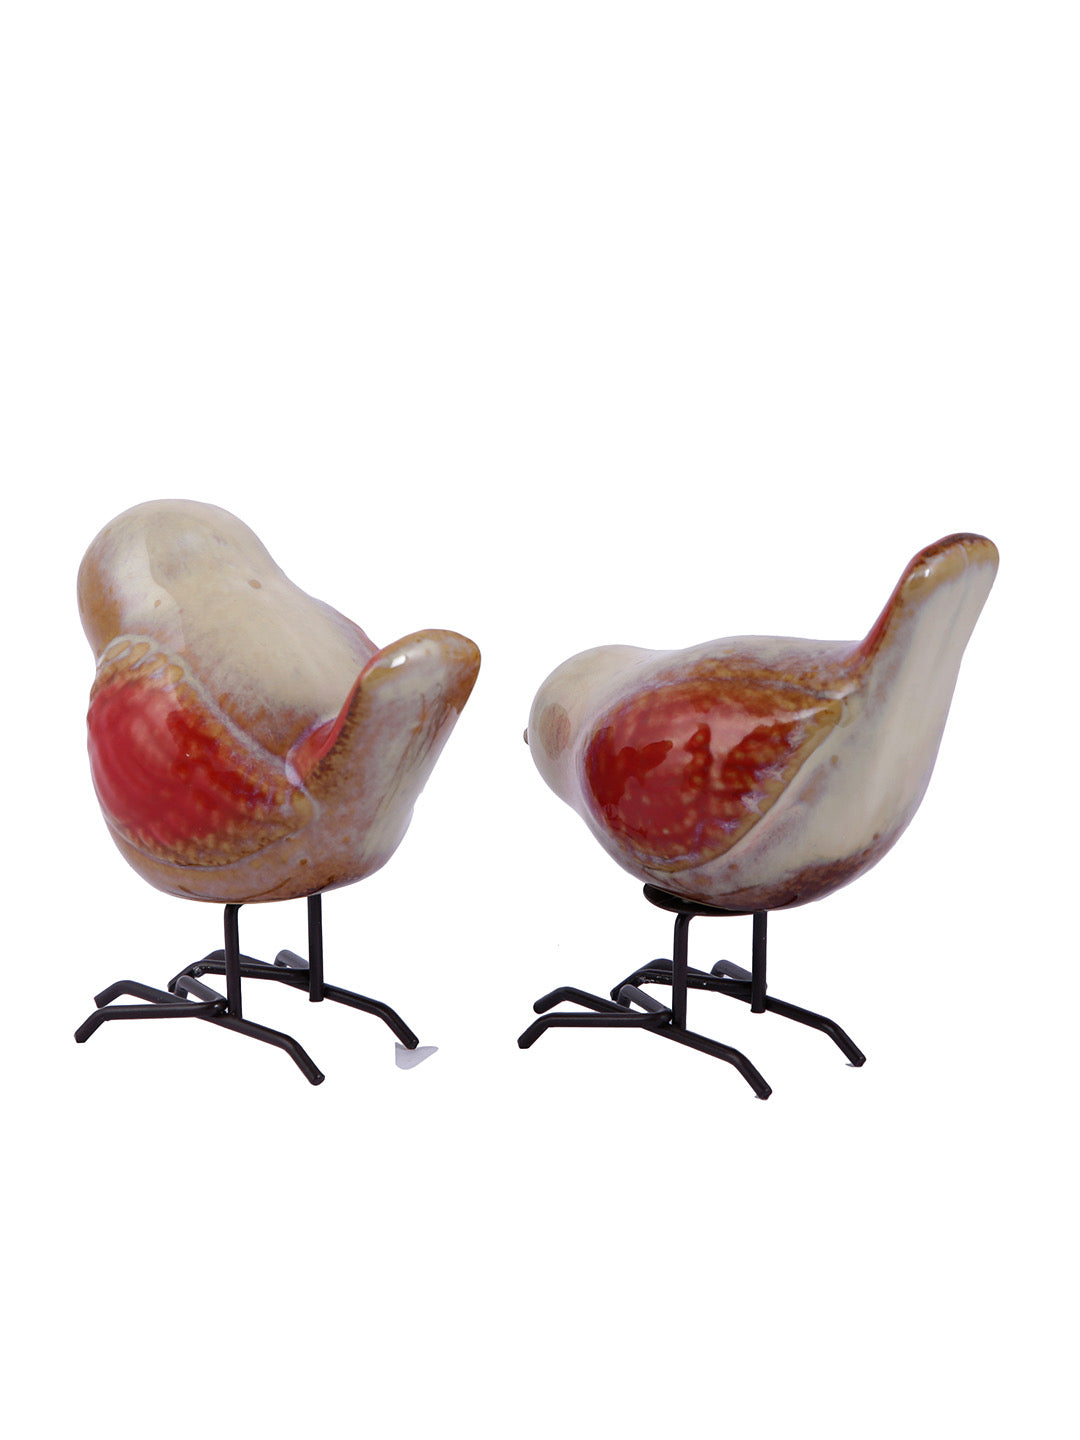 Set of 2 Ceramic Birds - Default Title (SHOWC22061_2)